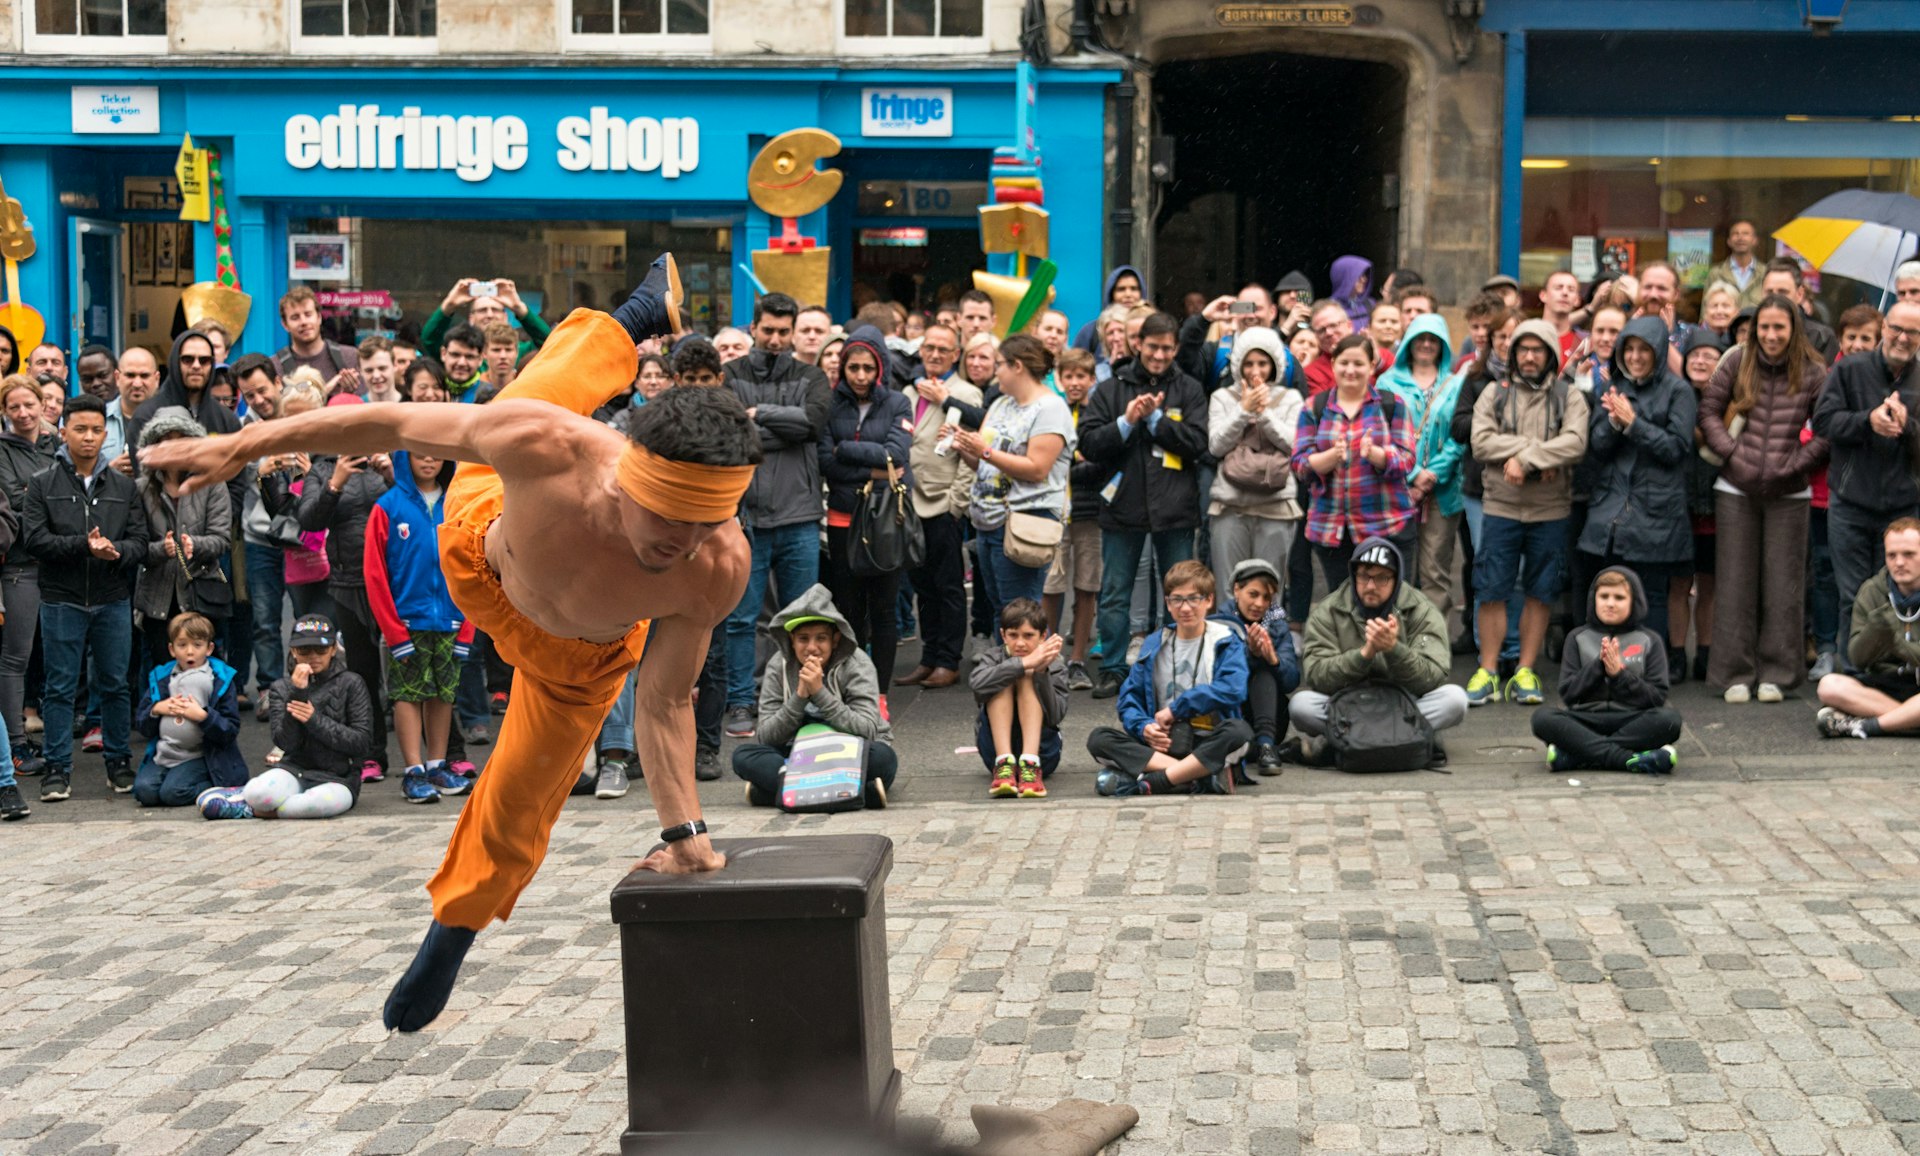 A street performer entertaining spectators on the Royal Mile during the Edinburgh Festival Fringe